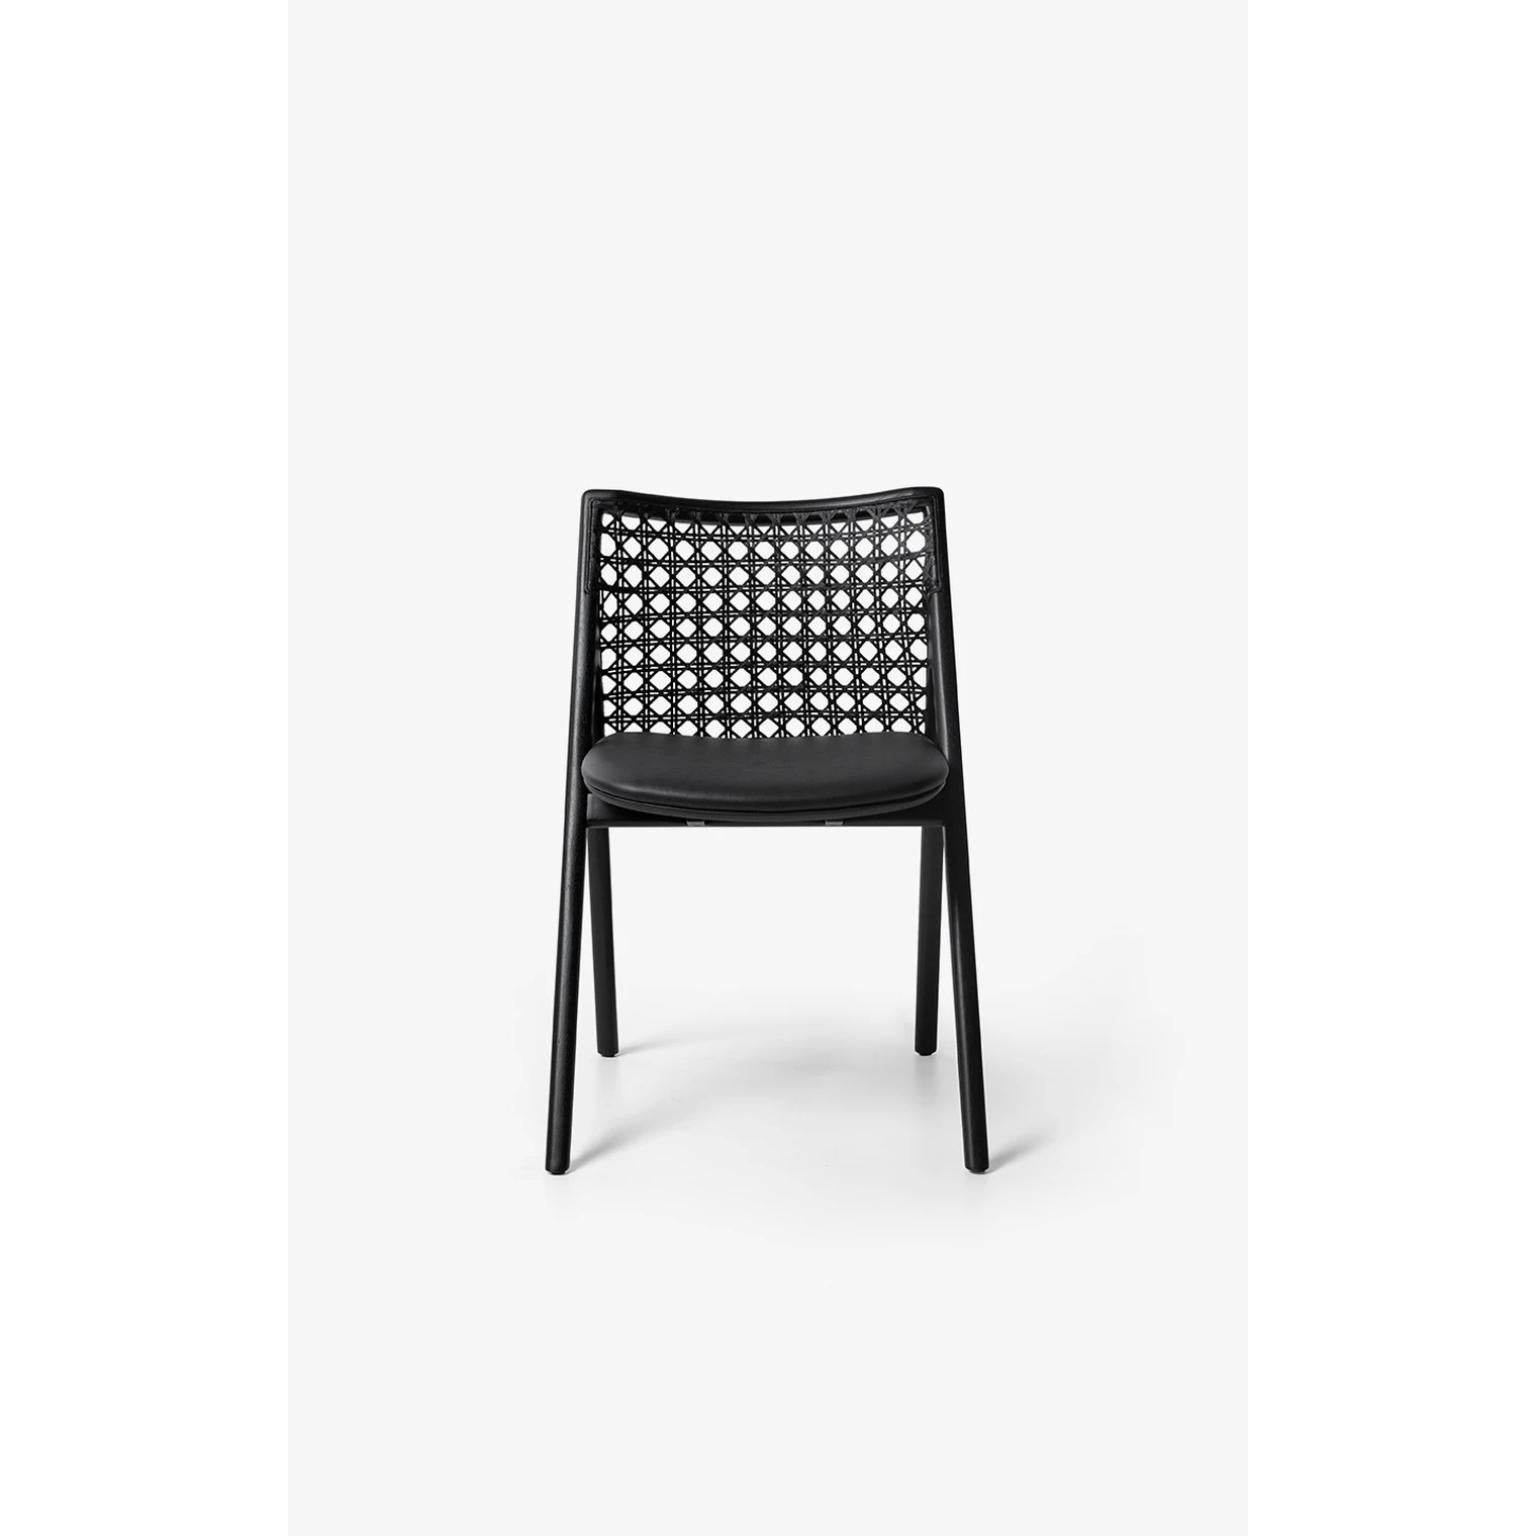 Chaise Tela noire de Wentz
Dimensions : D 54 x L 55 x H 80 cm
MATERIAL : Bois de tauari, coton, tissage, contreplaqué, rembourrage.
Poids : 5,4kg / 11,9 lbs

Le fauteuil Tela est une rencontre entre le design contemporain et les matériaux